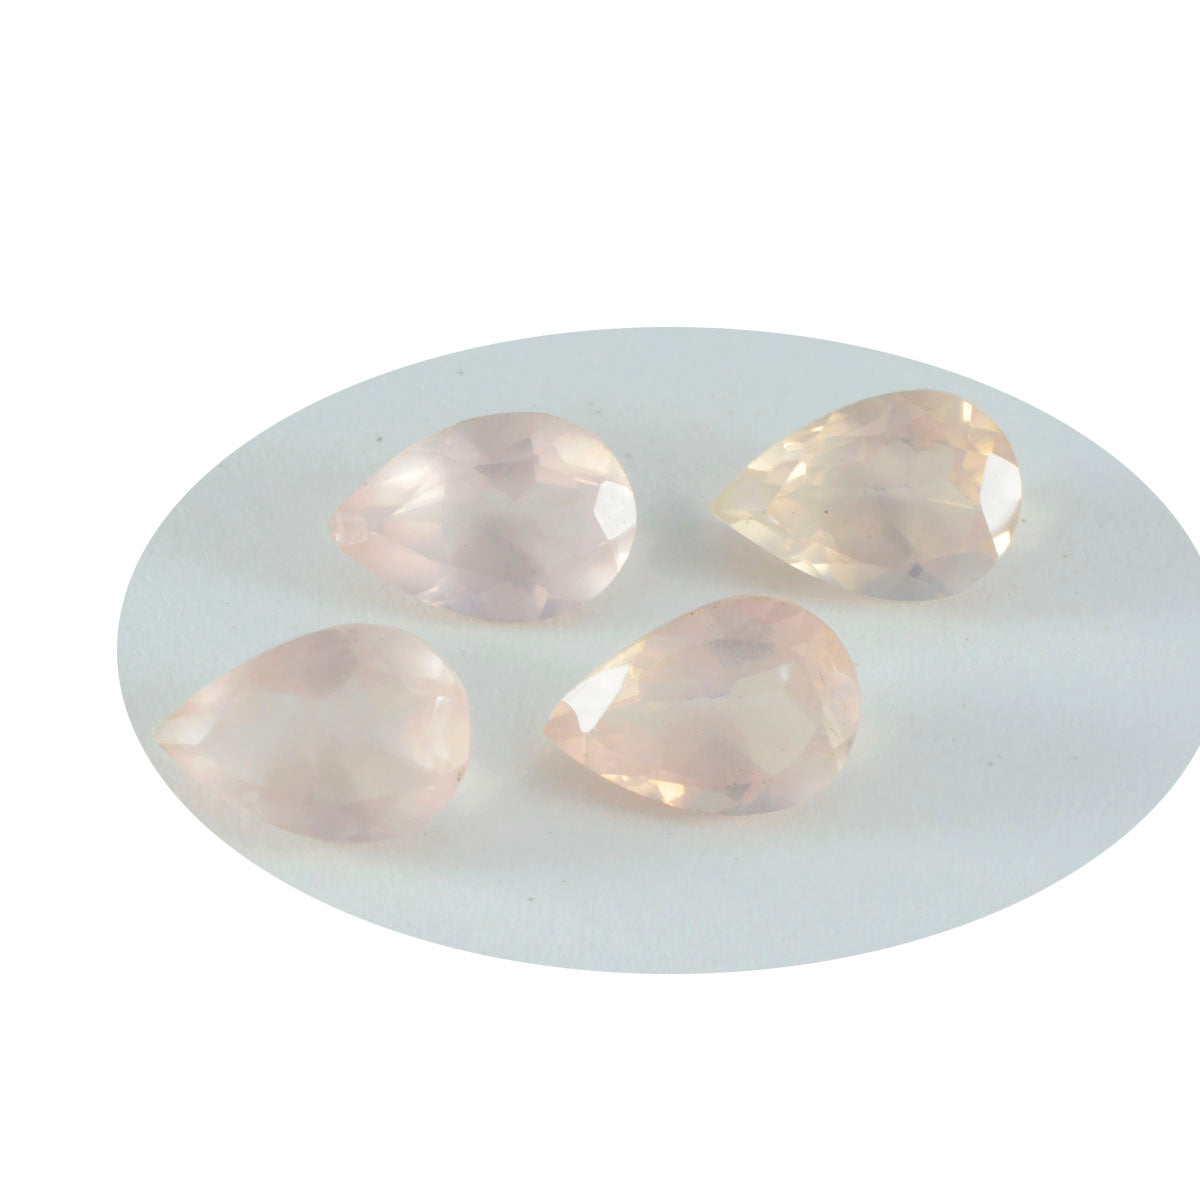 riyogems 1шт розовый кварц ограненный 8x12 мм грушевидная форма удивительного качества россыпь драгоценных камней